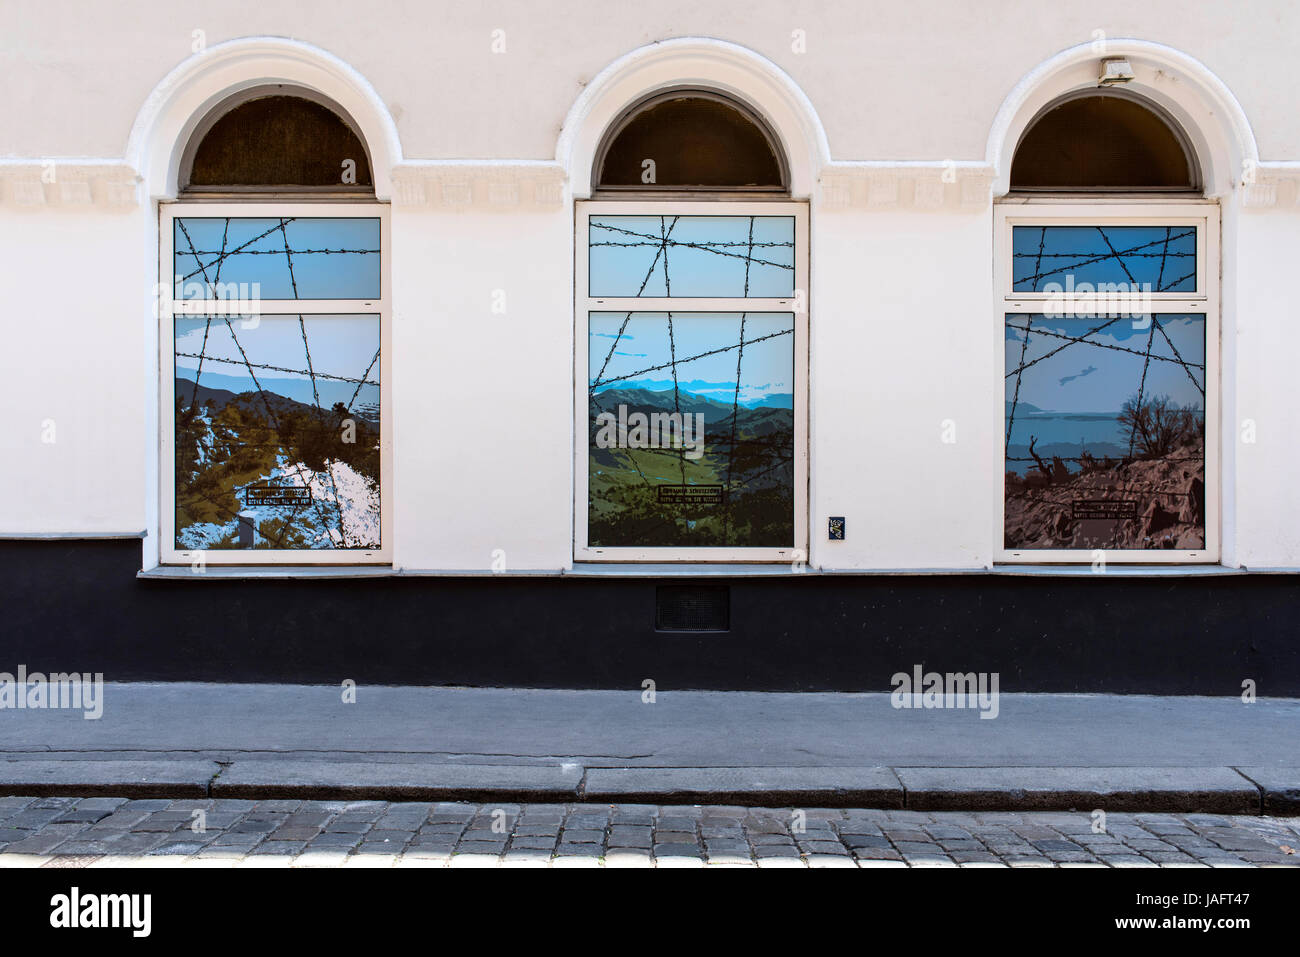 La frontière de barbelés peints sur windows, Vienne, Autriche, Europe Banque D'Images